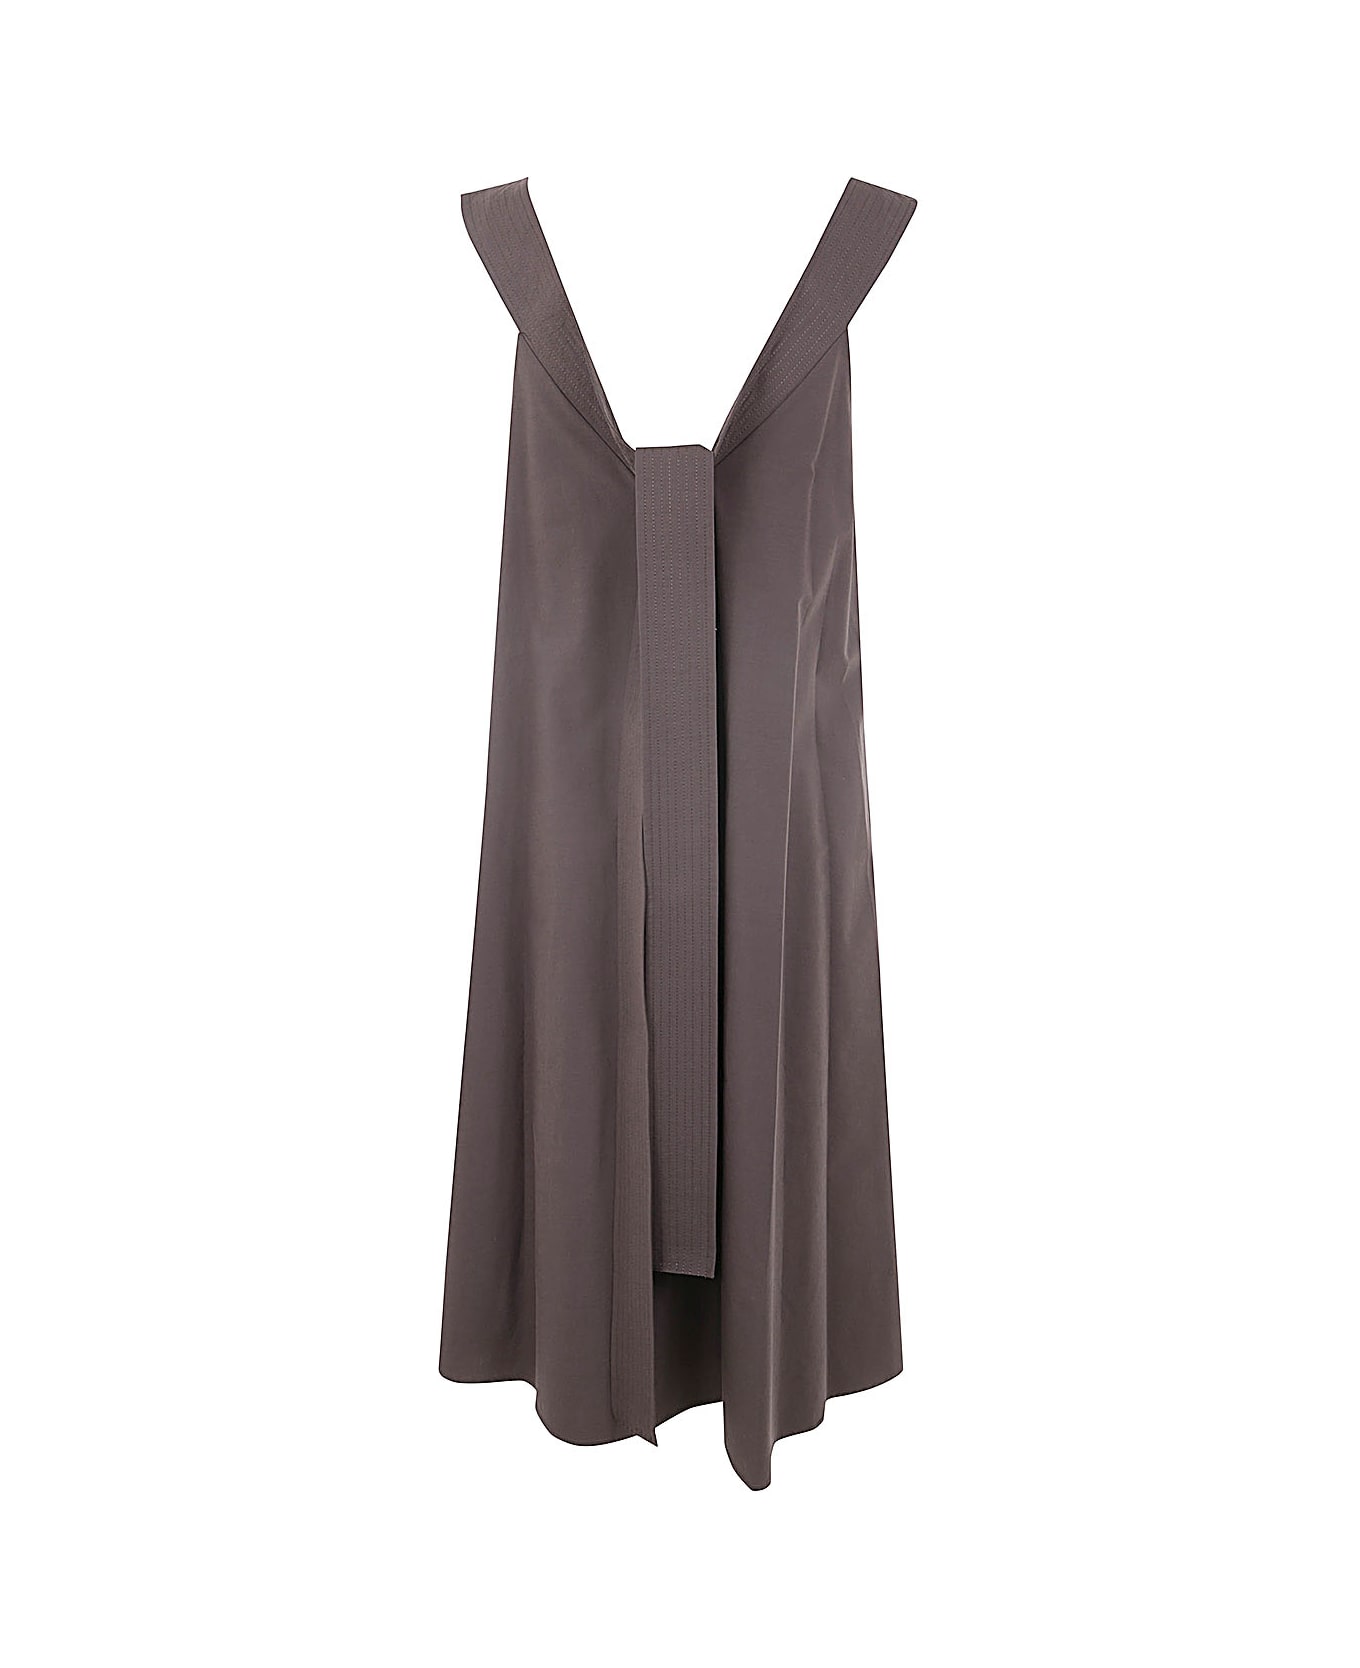 Parosh Knotted Mini Dress - Dark Brown